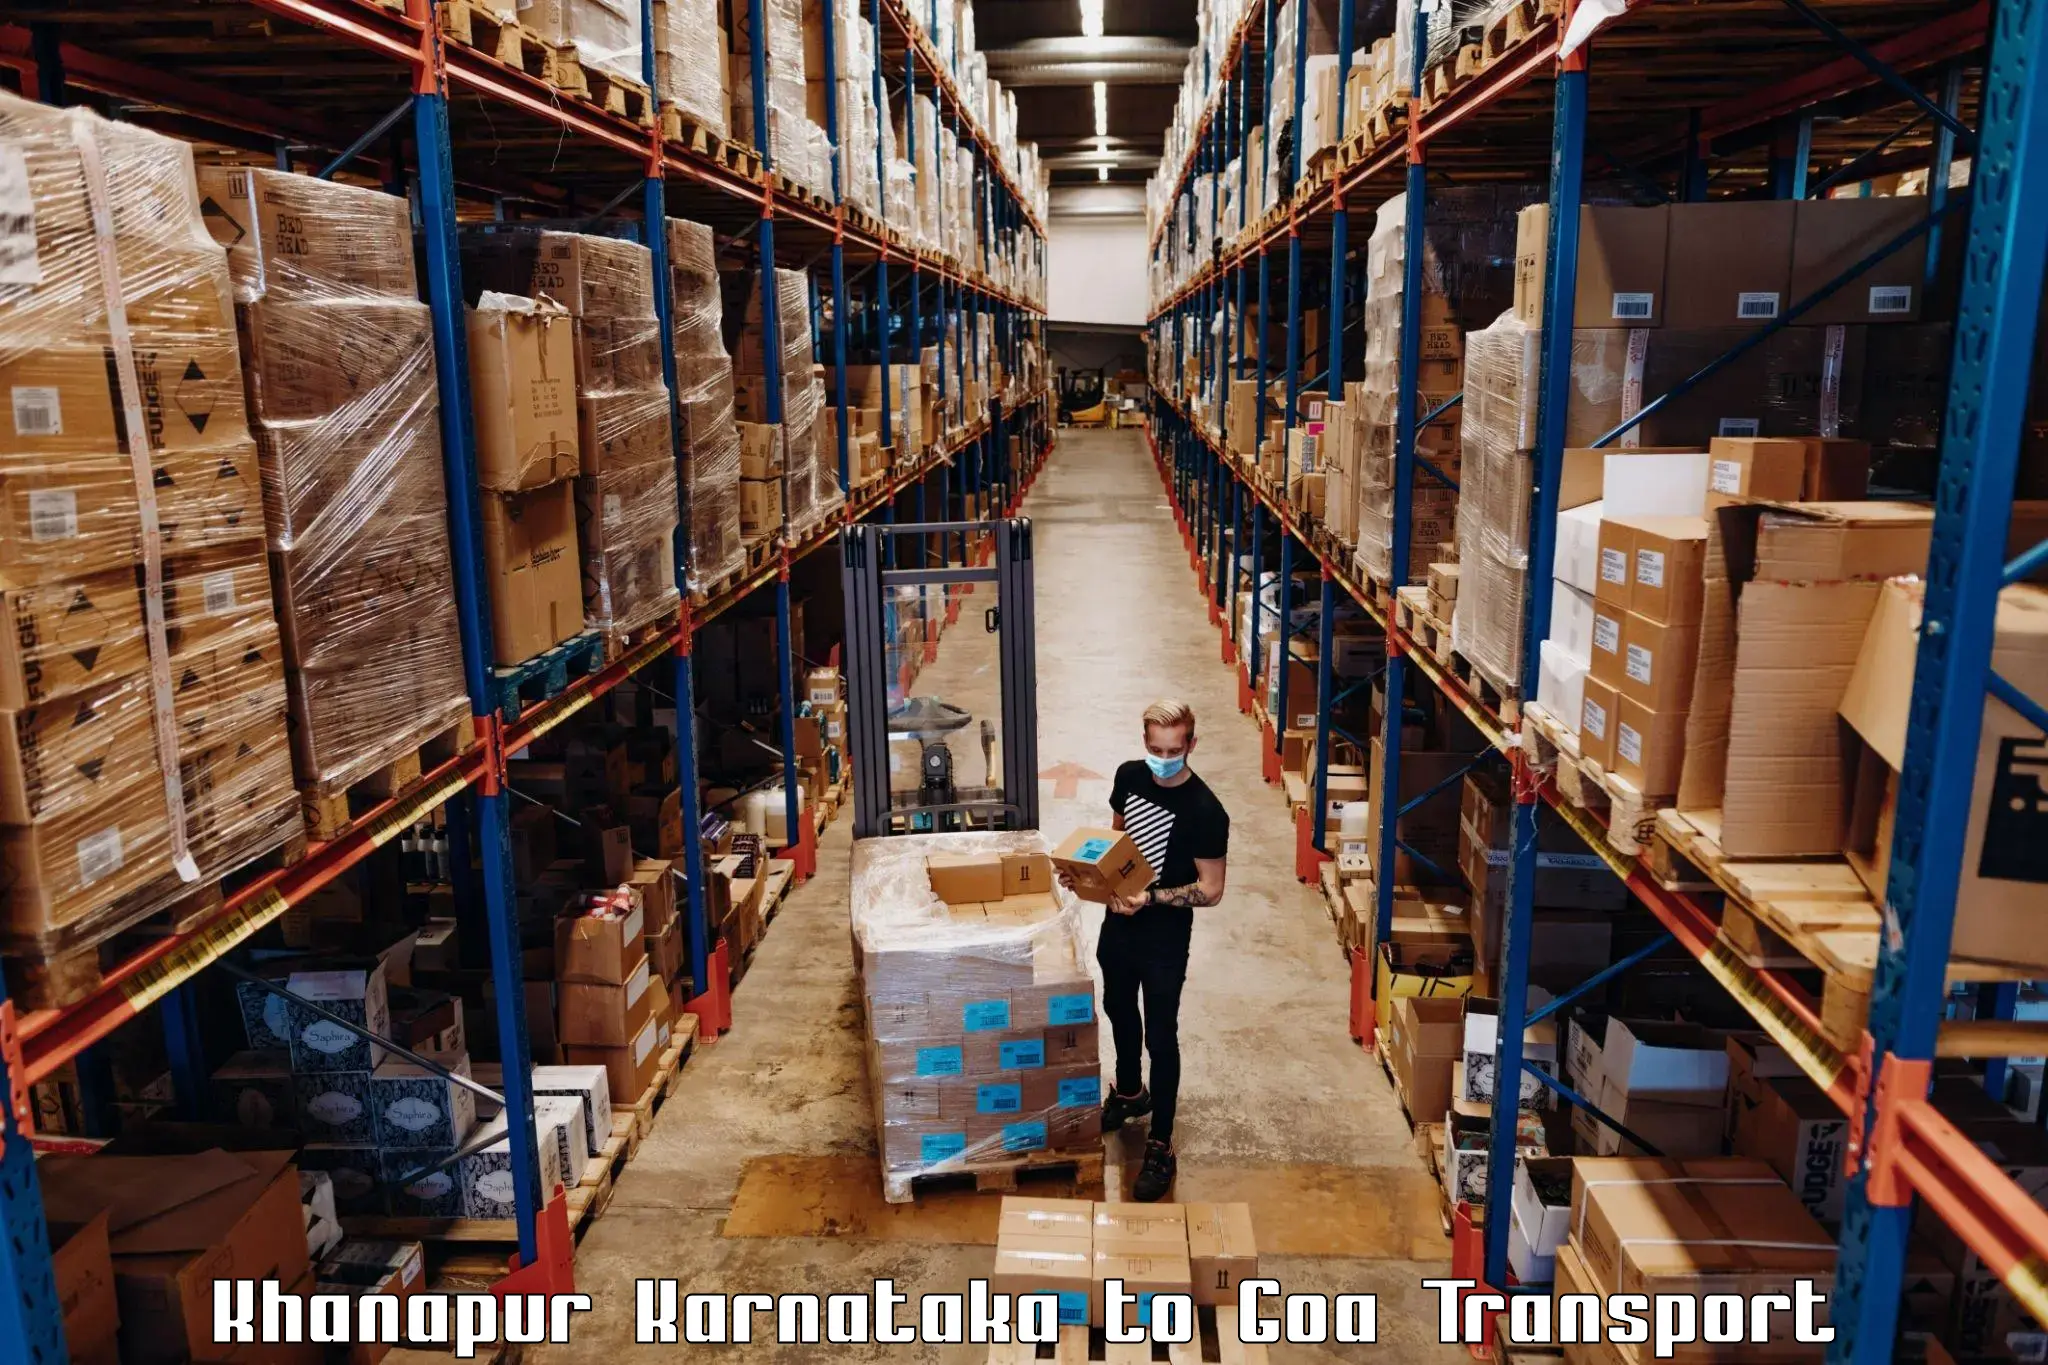 International cargo transportation services Khanapur Karnataka to Panjim